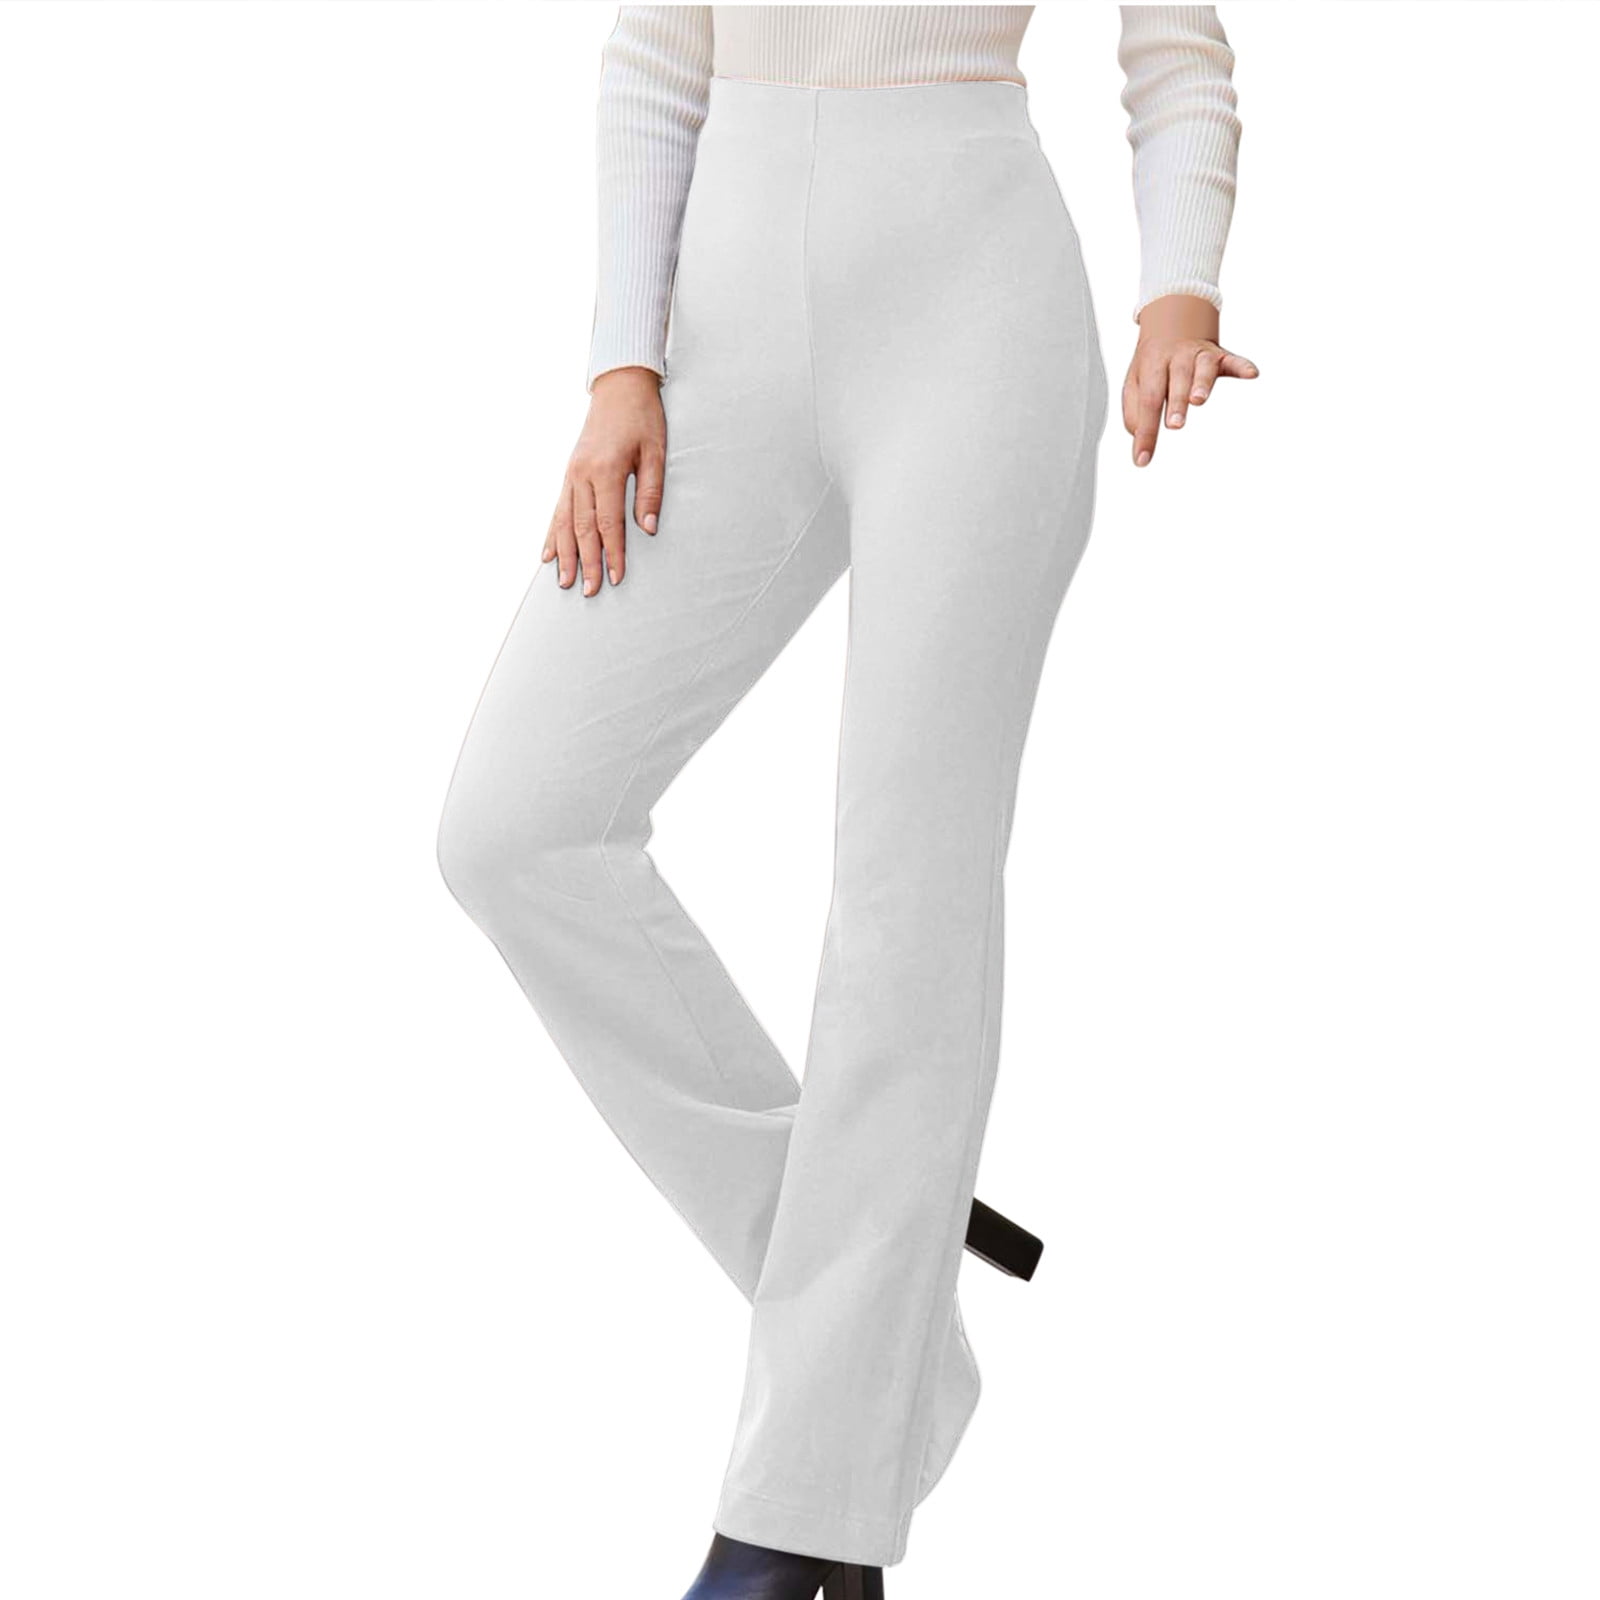 women’s white dress pants